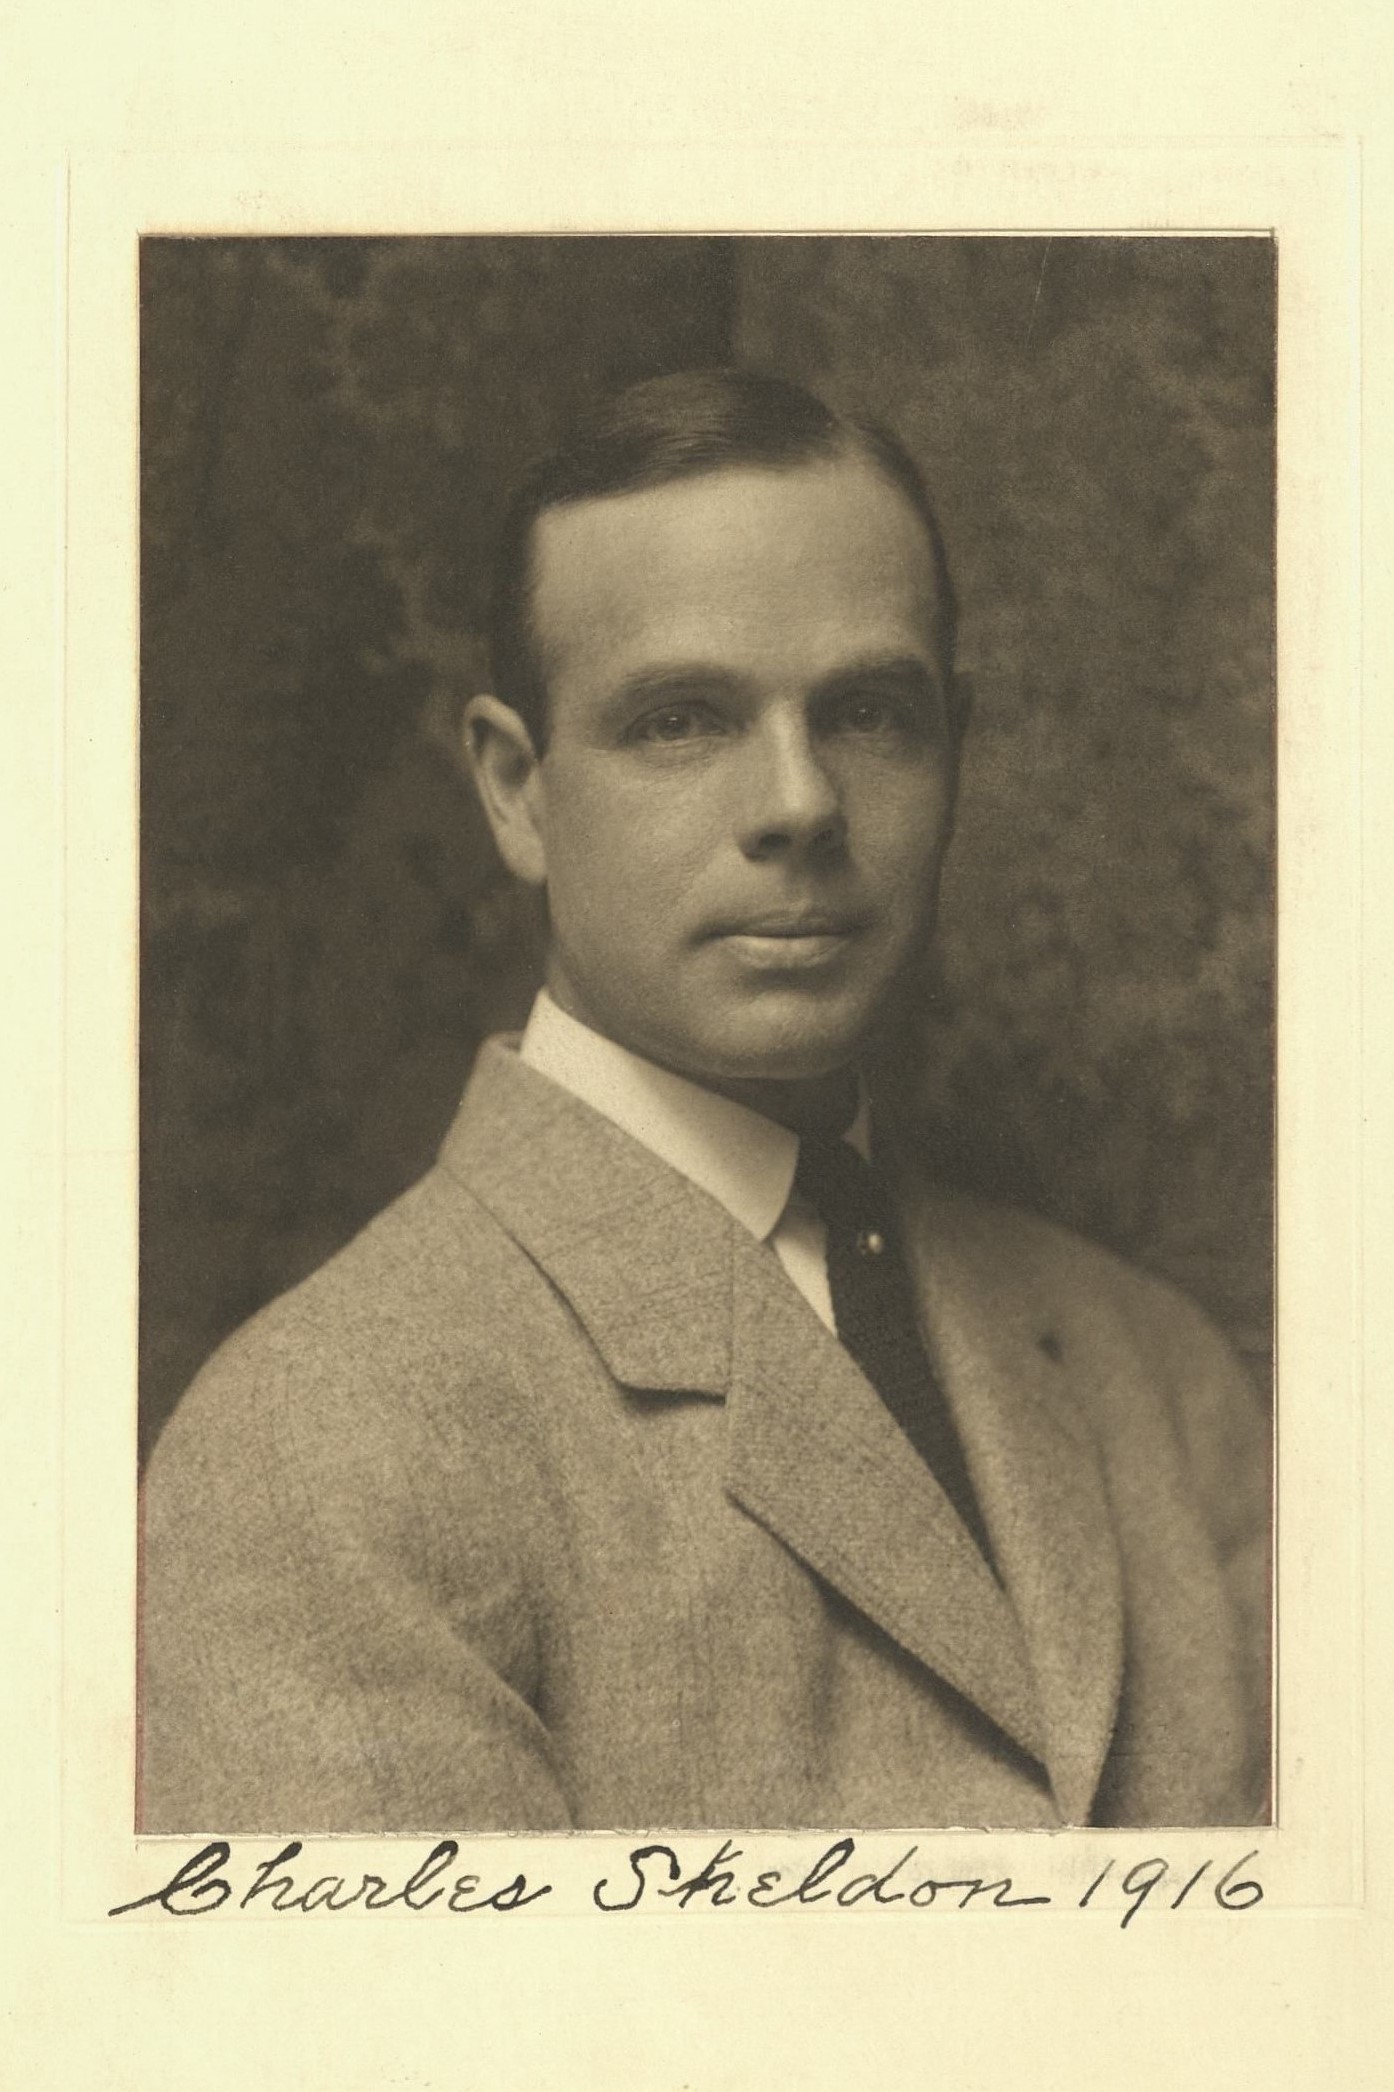 Member portrait of Charles Sheldon